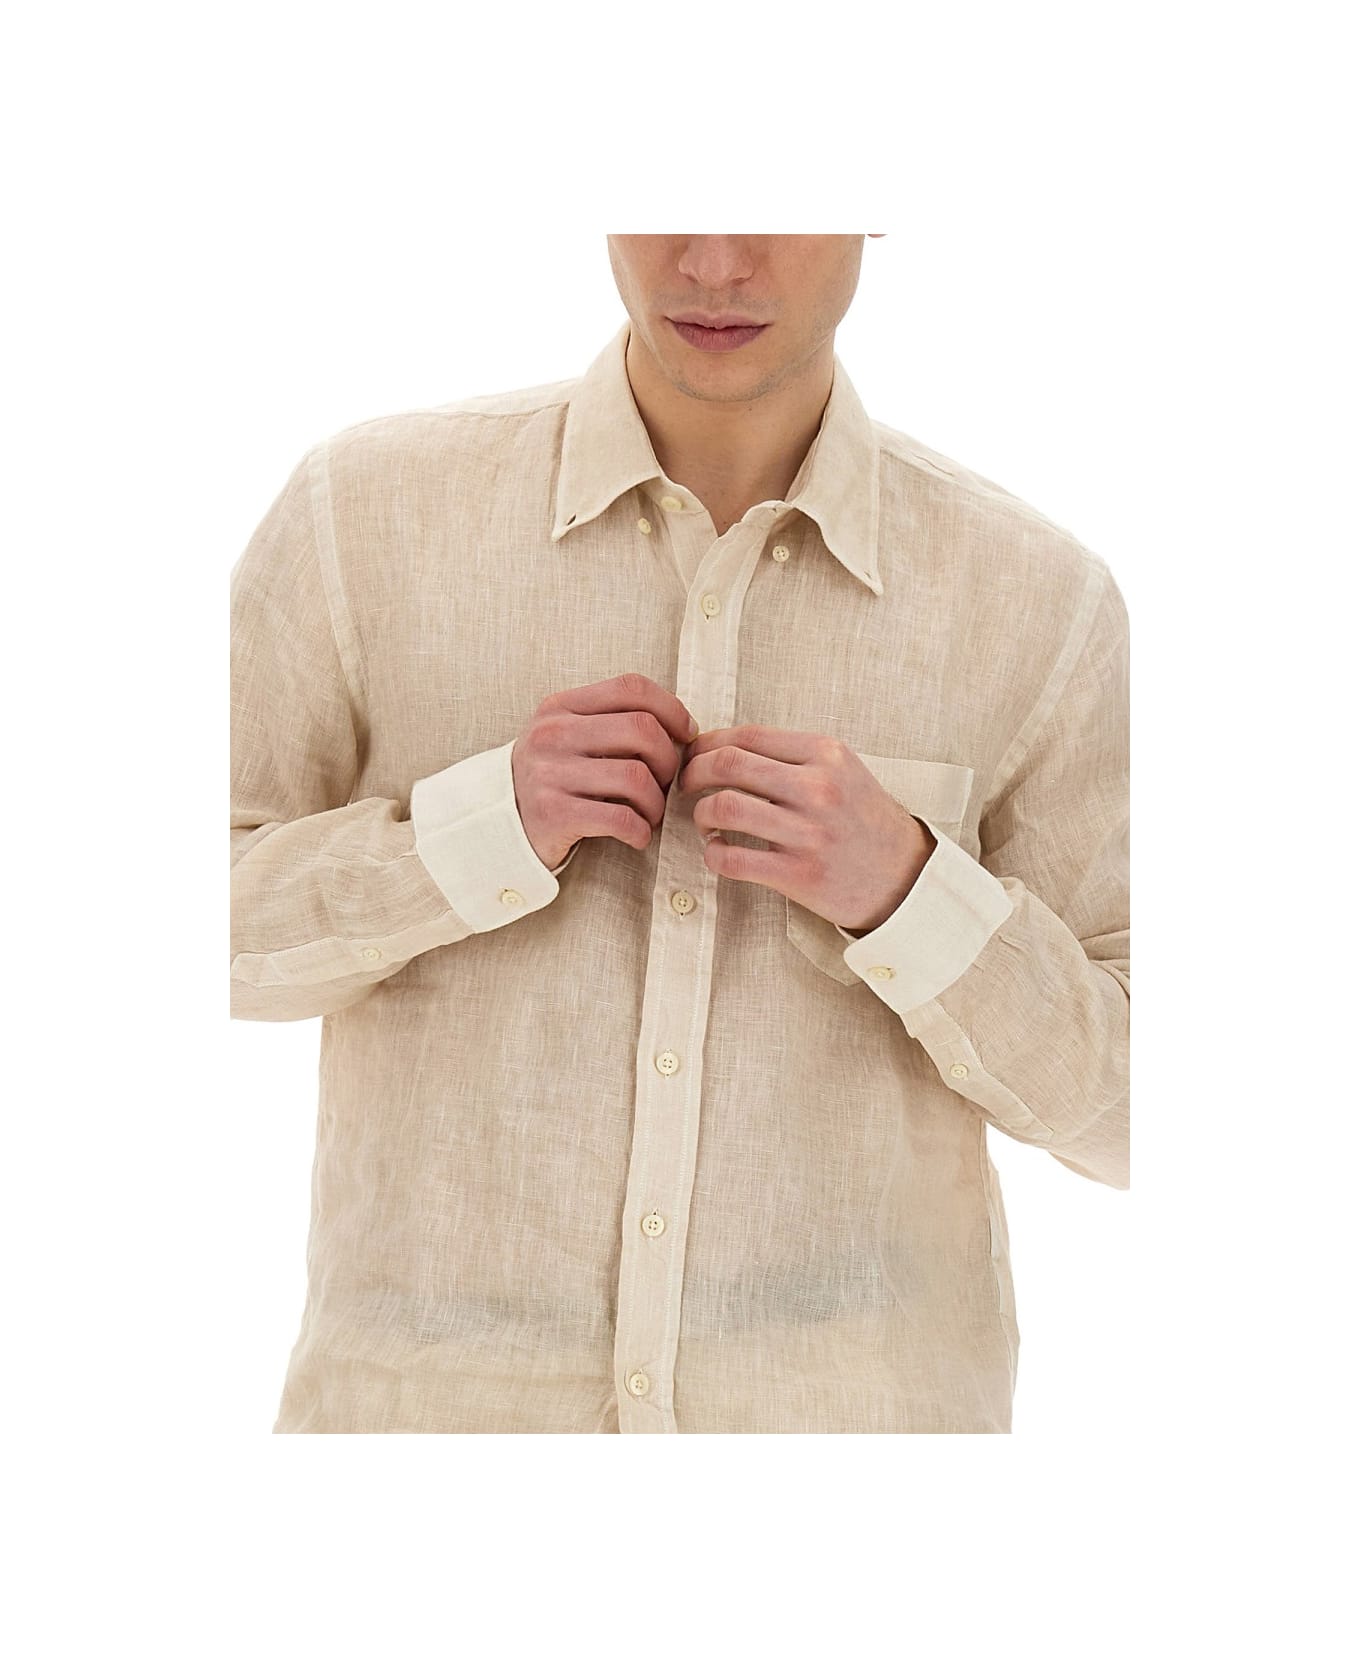 120% Lino Linen Shirt - BEIGE